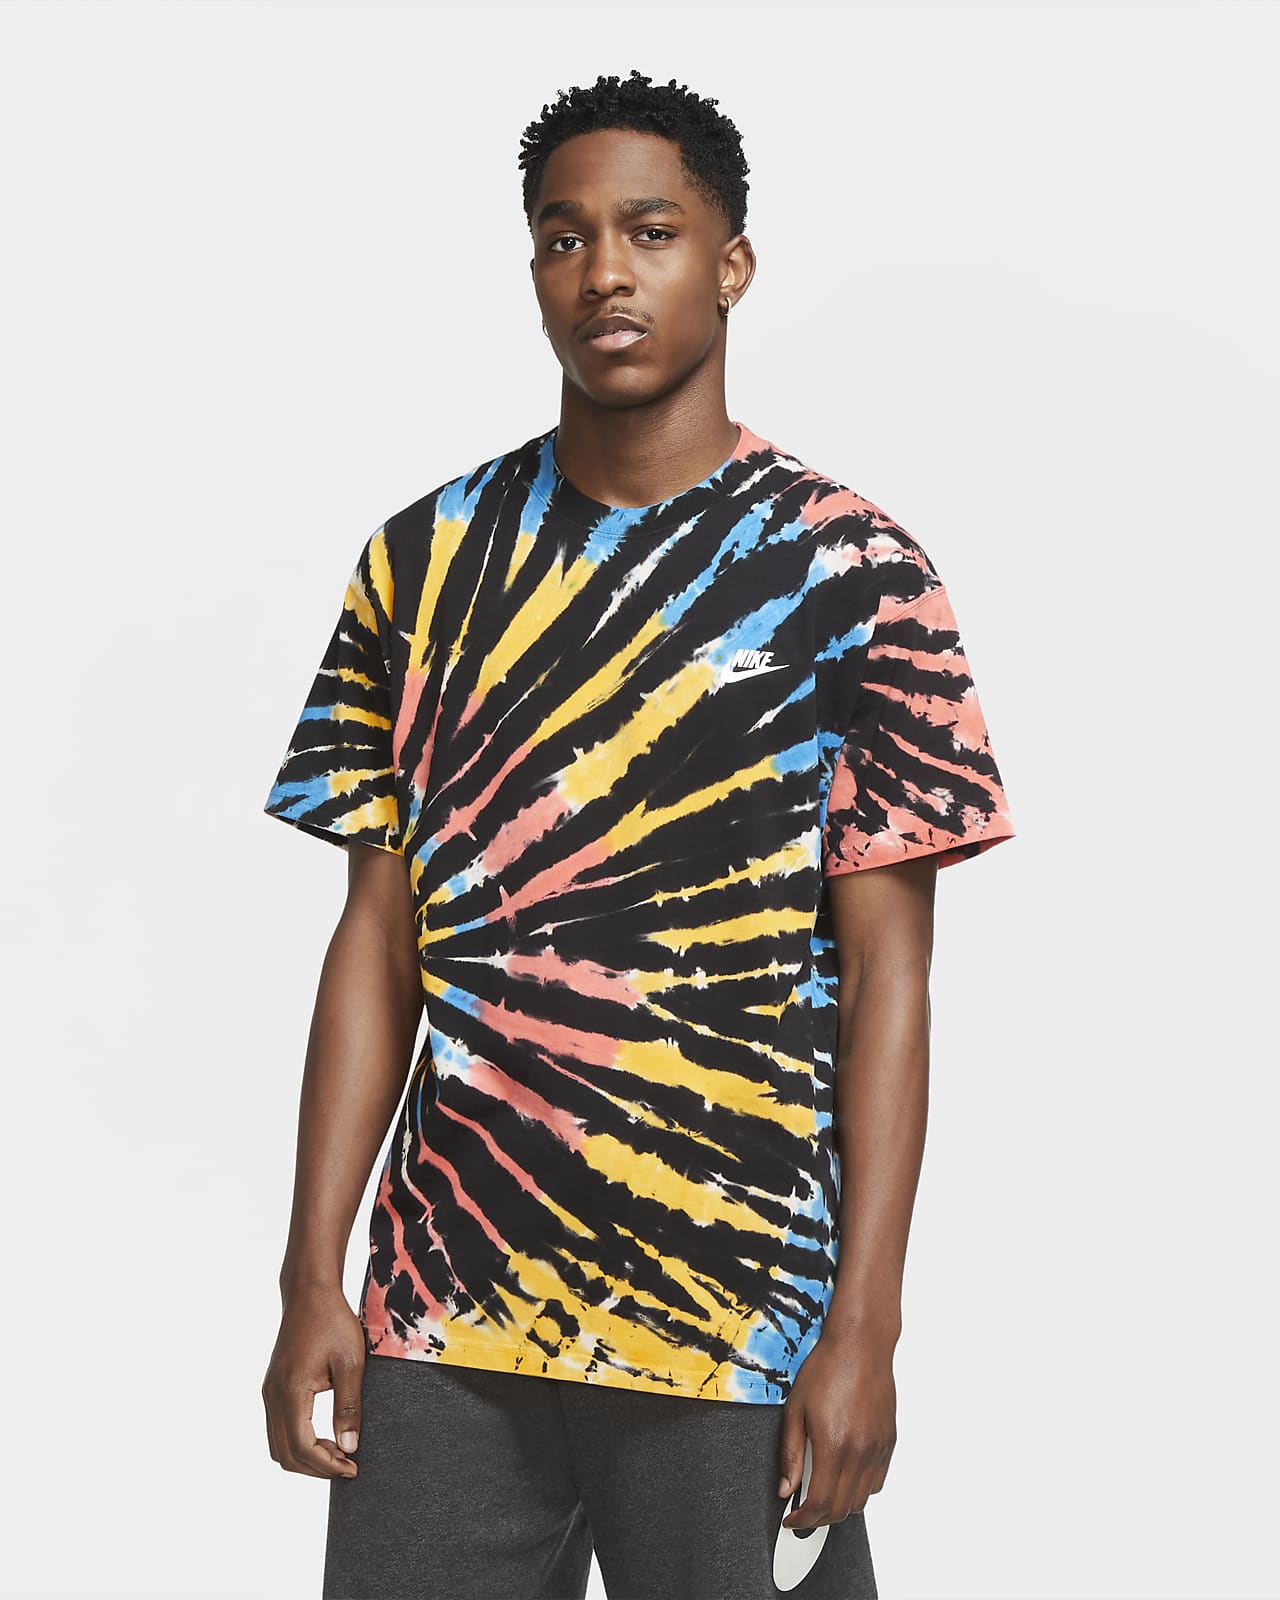 Download Nike Sportswear Men's Tie-Dye T-Shirt. Nike.com